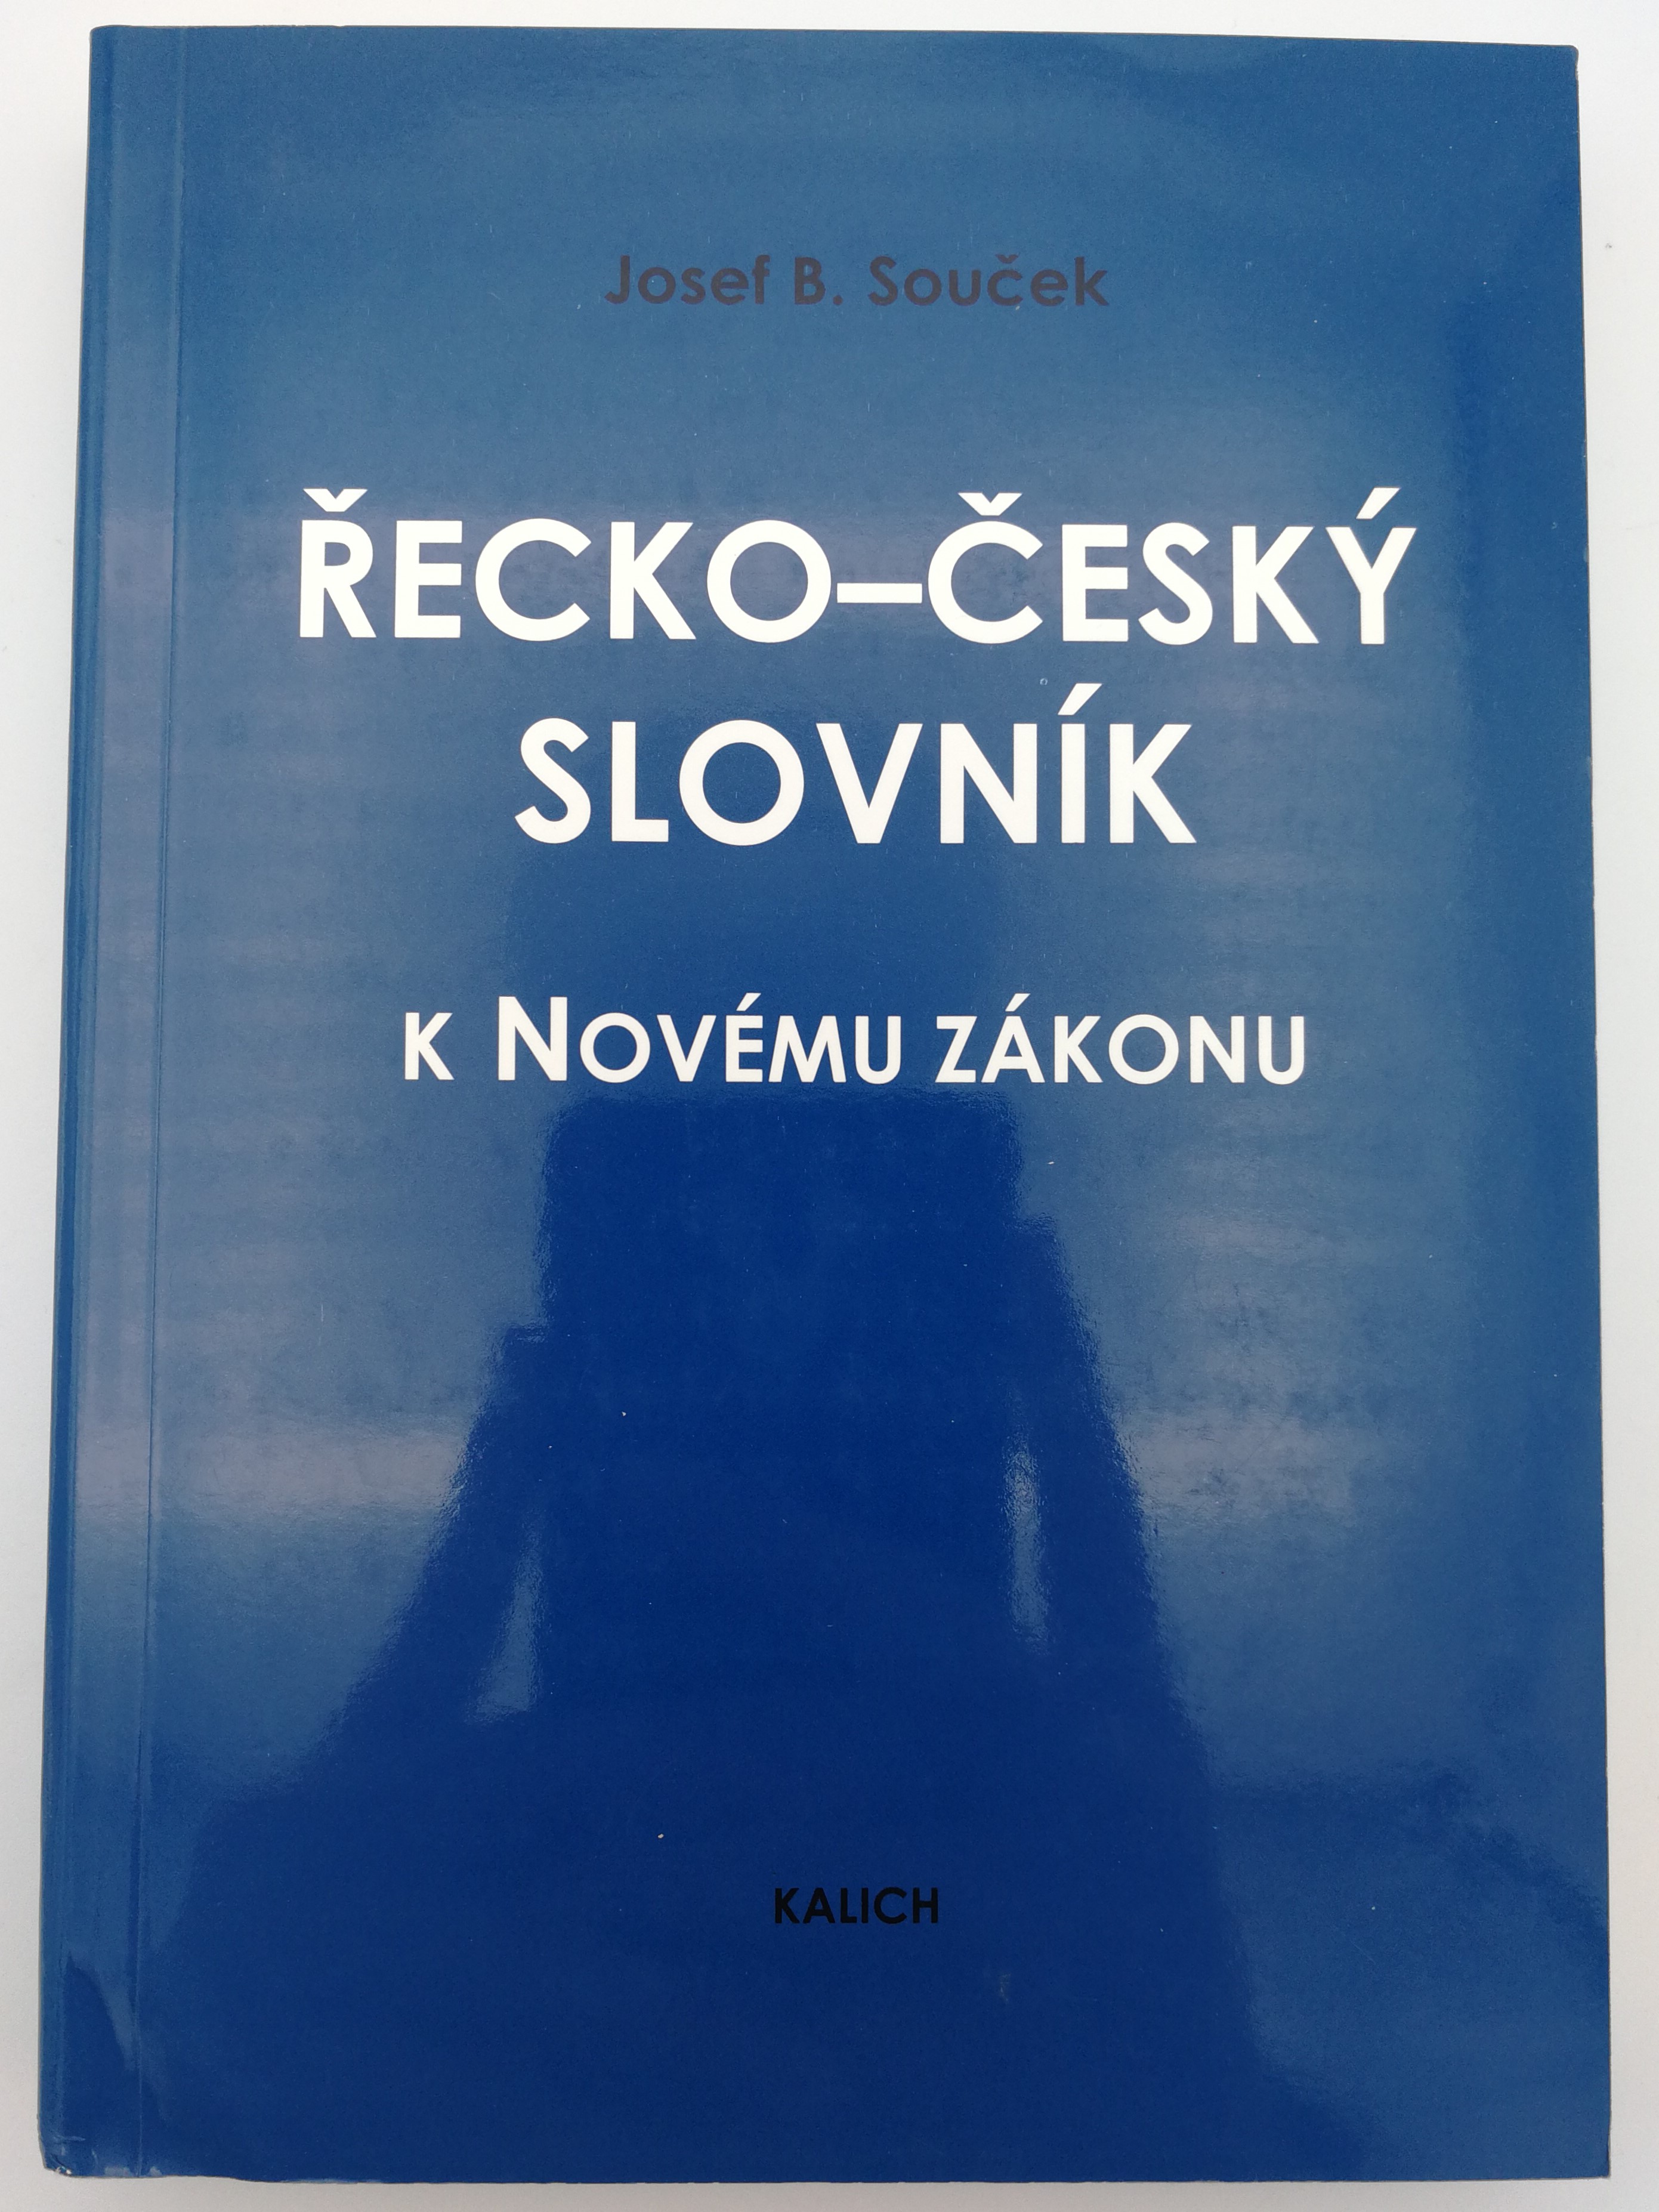 Greek - Czech New Testament Dictionary by Josef B. Souček / řecko-česky  slovník k Novému Zákonu / Kalich 2003 / Paperback - bibleinmylanguage